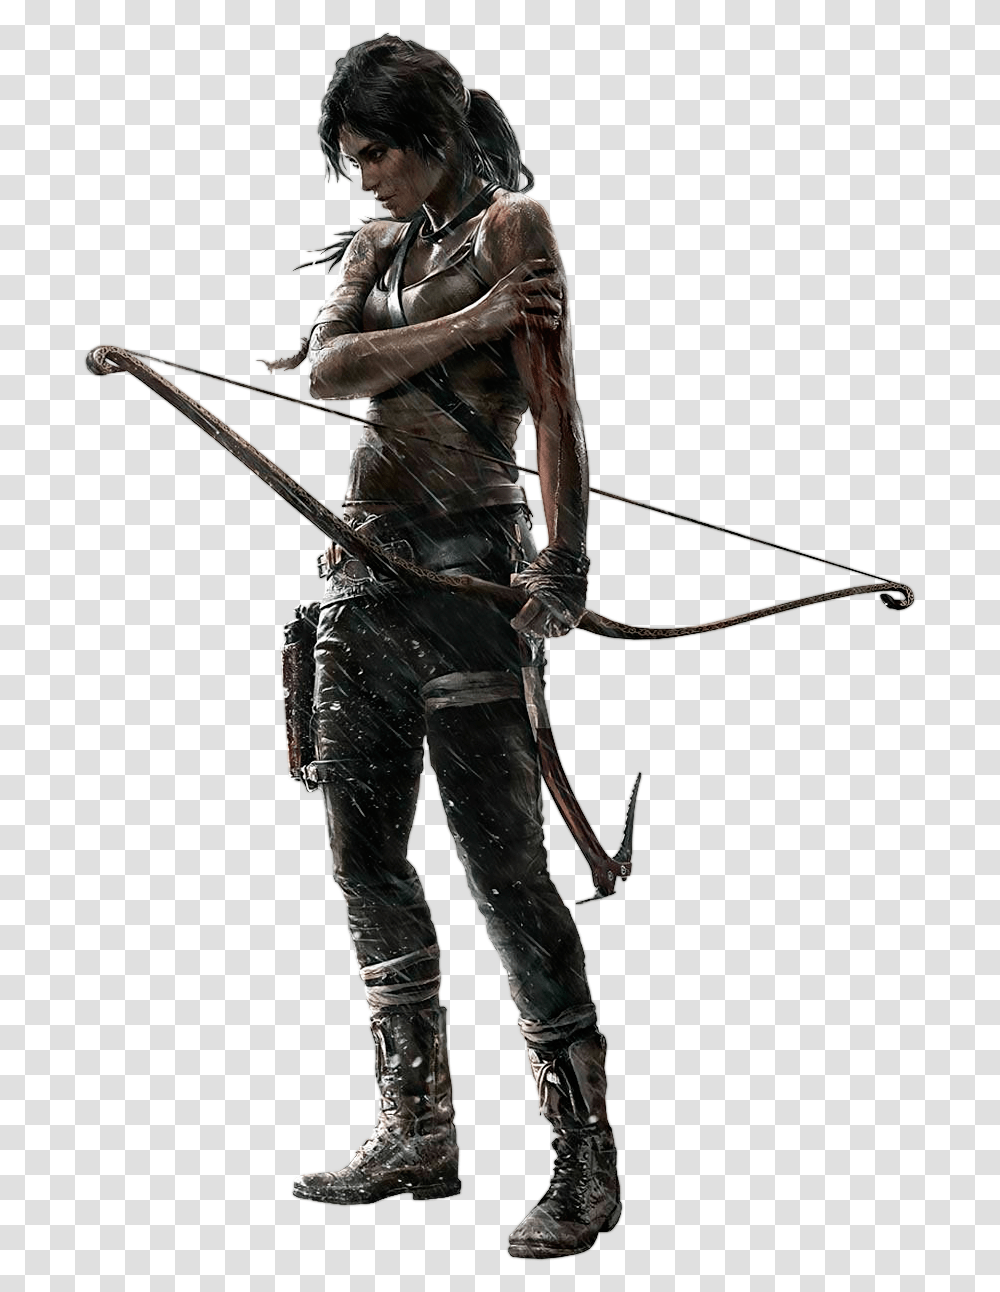 Lara Croft, Character, Person, Human, Arrow Transparent Png